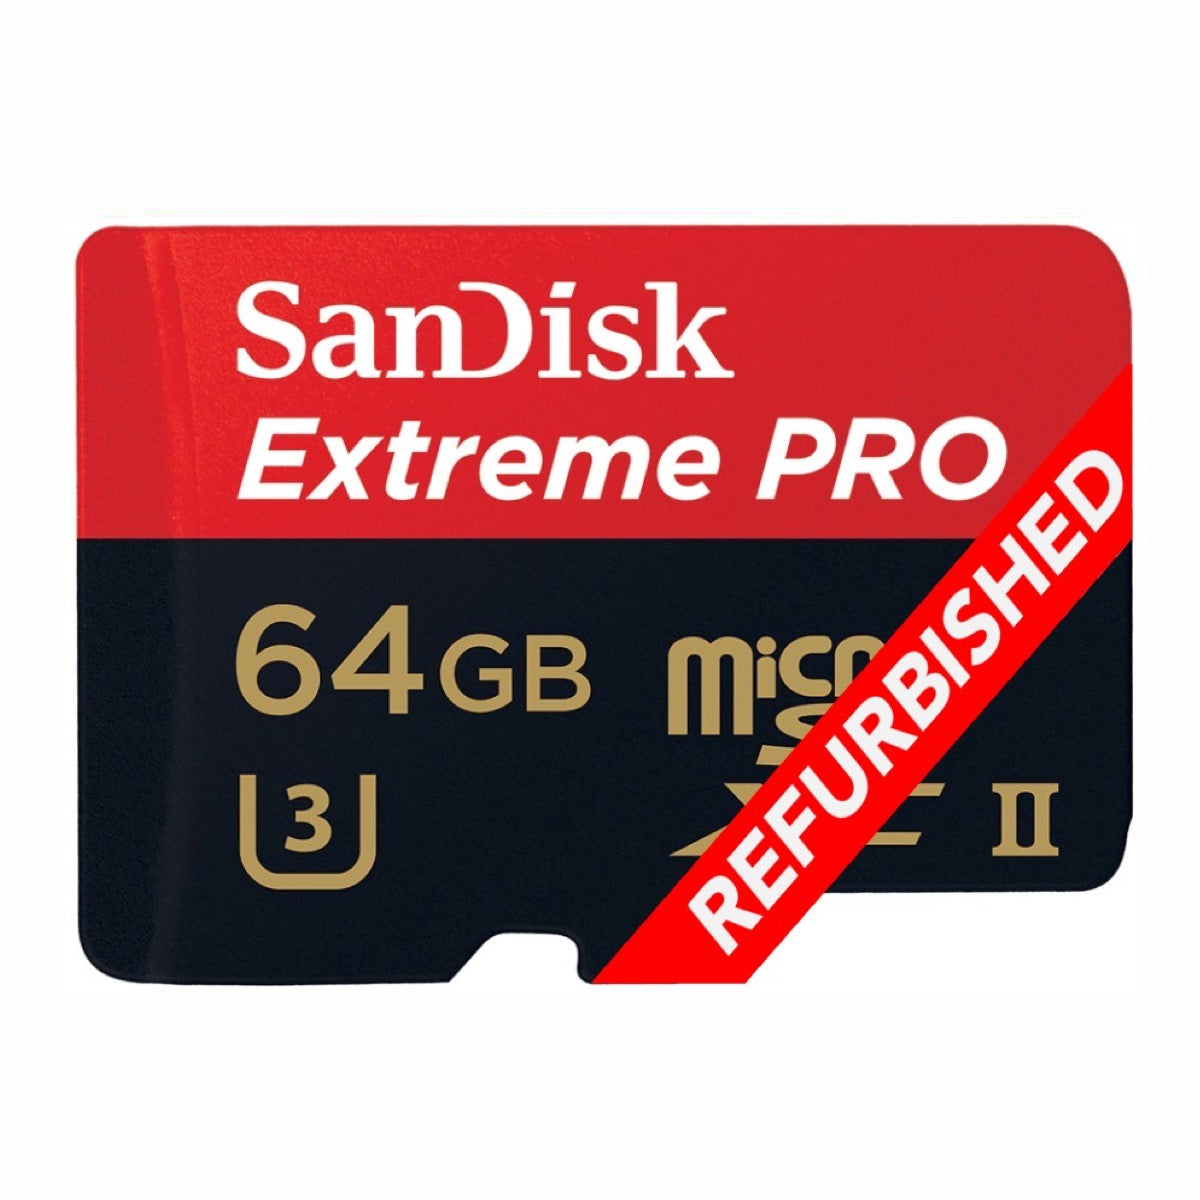 SanDisk Extreme PRO SDHC SDXC UHS-II Memory Cards